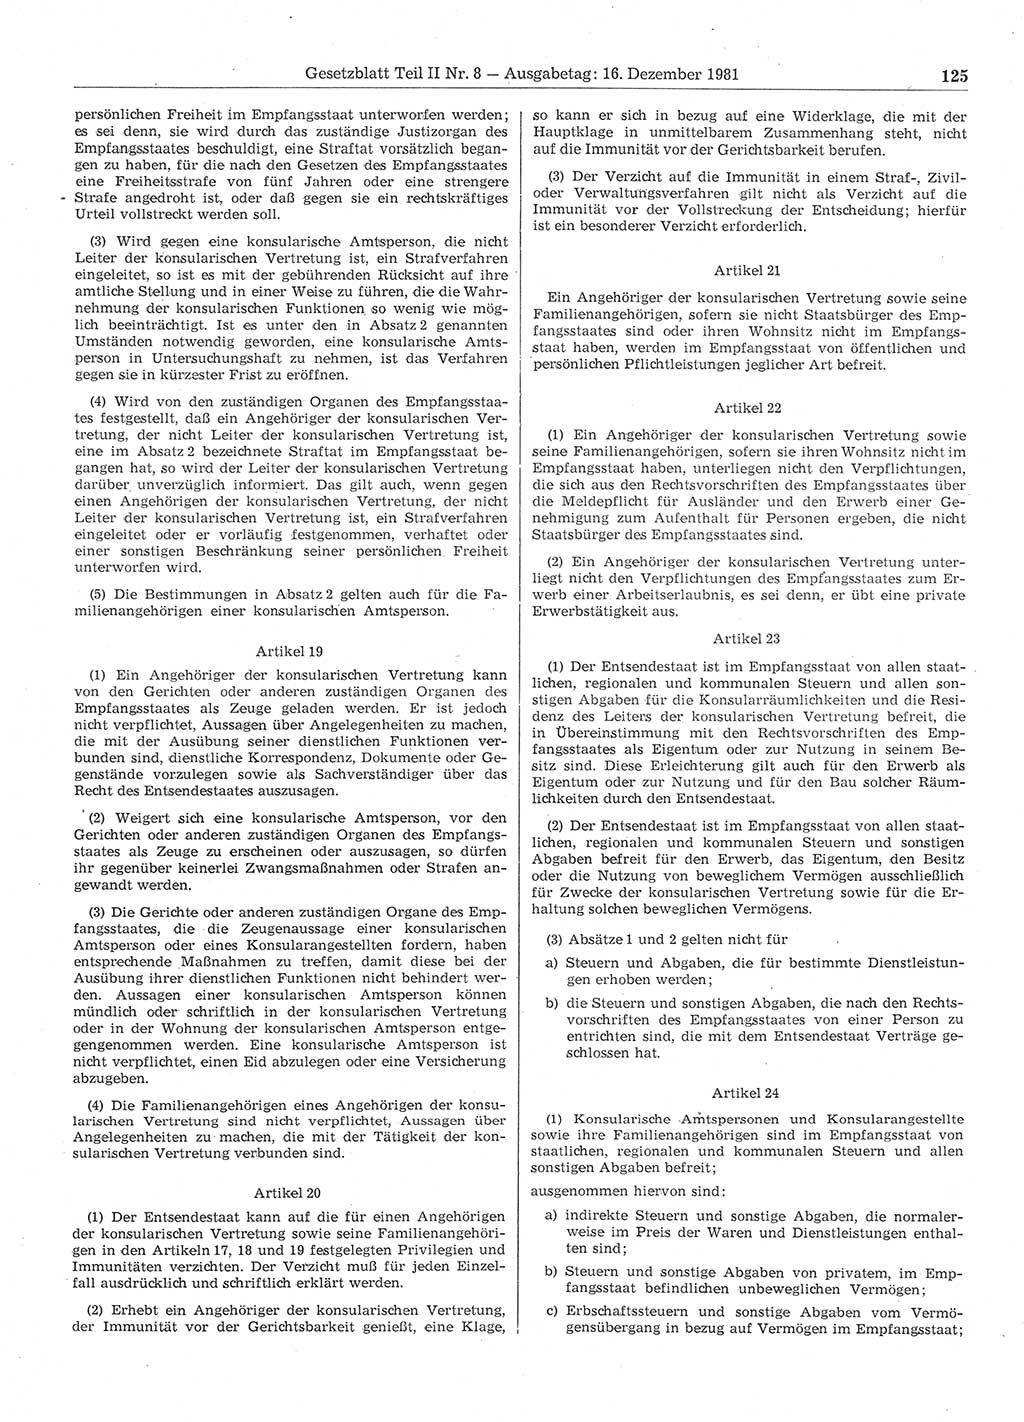 Gesetzblatt (GBl.) der Deutschen Demokratischen Republik (DDR) Teil ⅠⅠ 1981, Seite 125 (GBl. DDR ⅠⅠ 1981, S. 125)